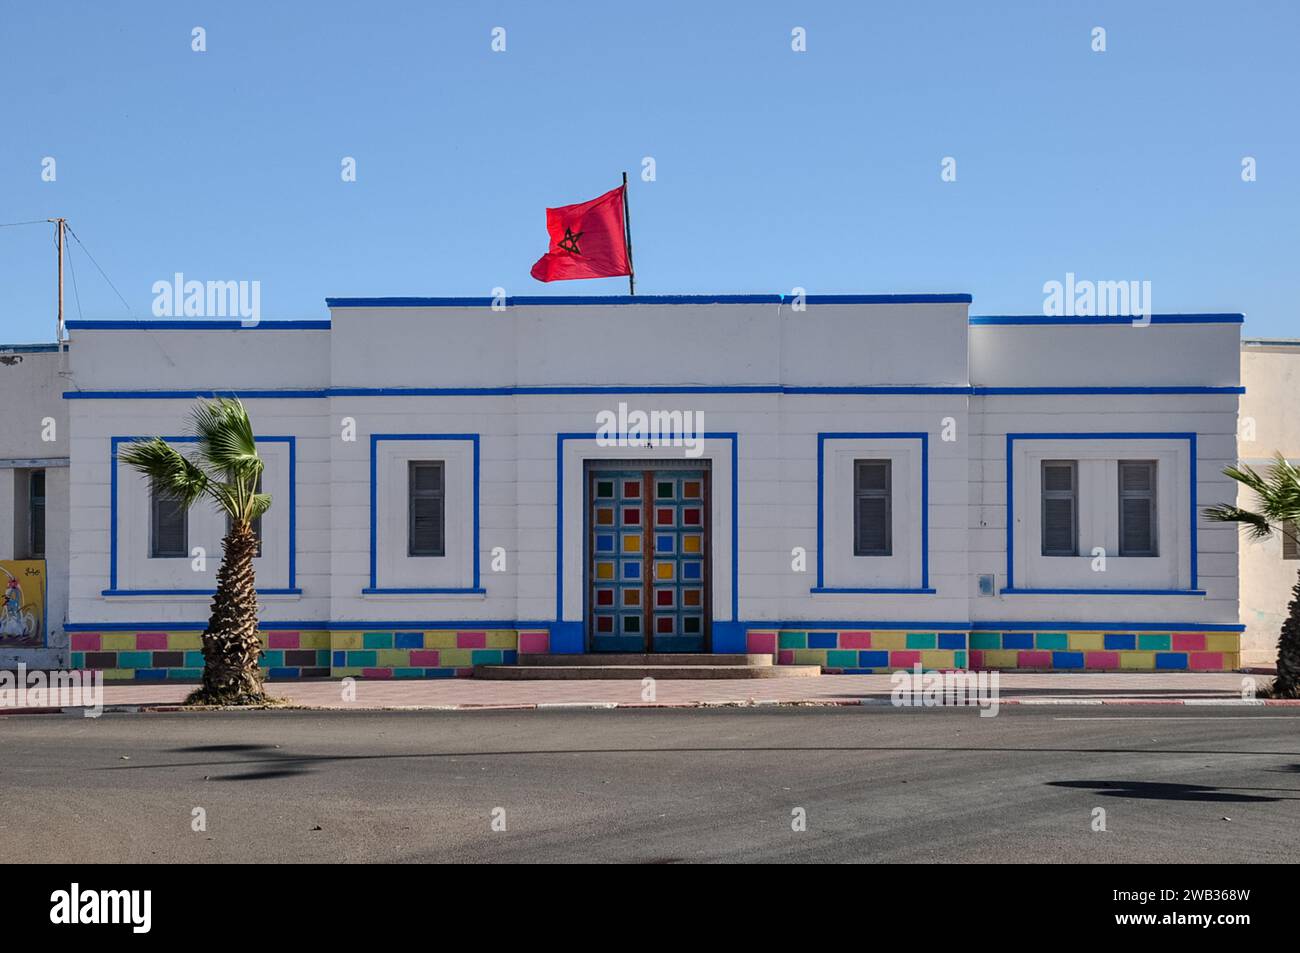 Ecole Halima Saâdia, l'école locale de l'avenue Hassan II, Sidi Ifni, Maroc. Style Art déco, magnifiquement peint avec drapeau national marocain flottant. Banque D'Images